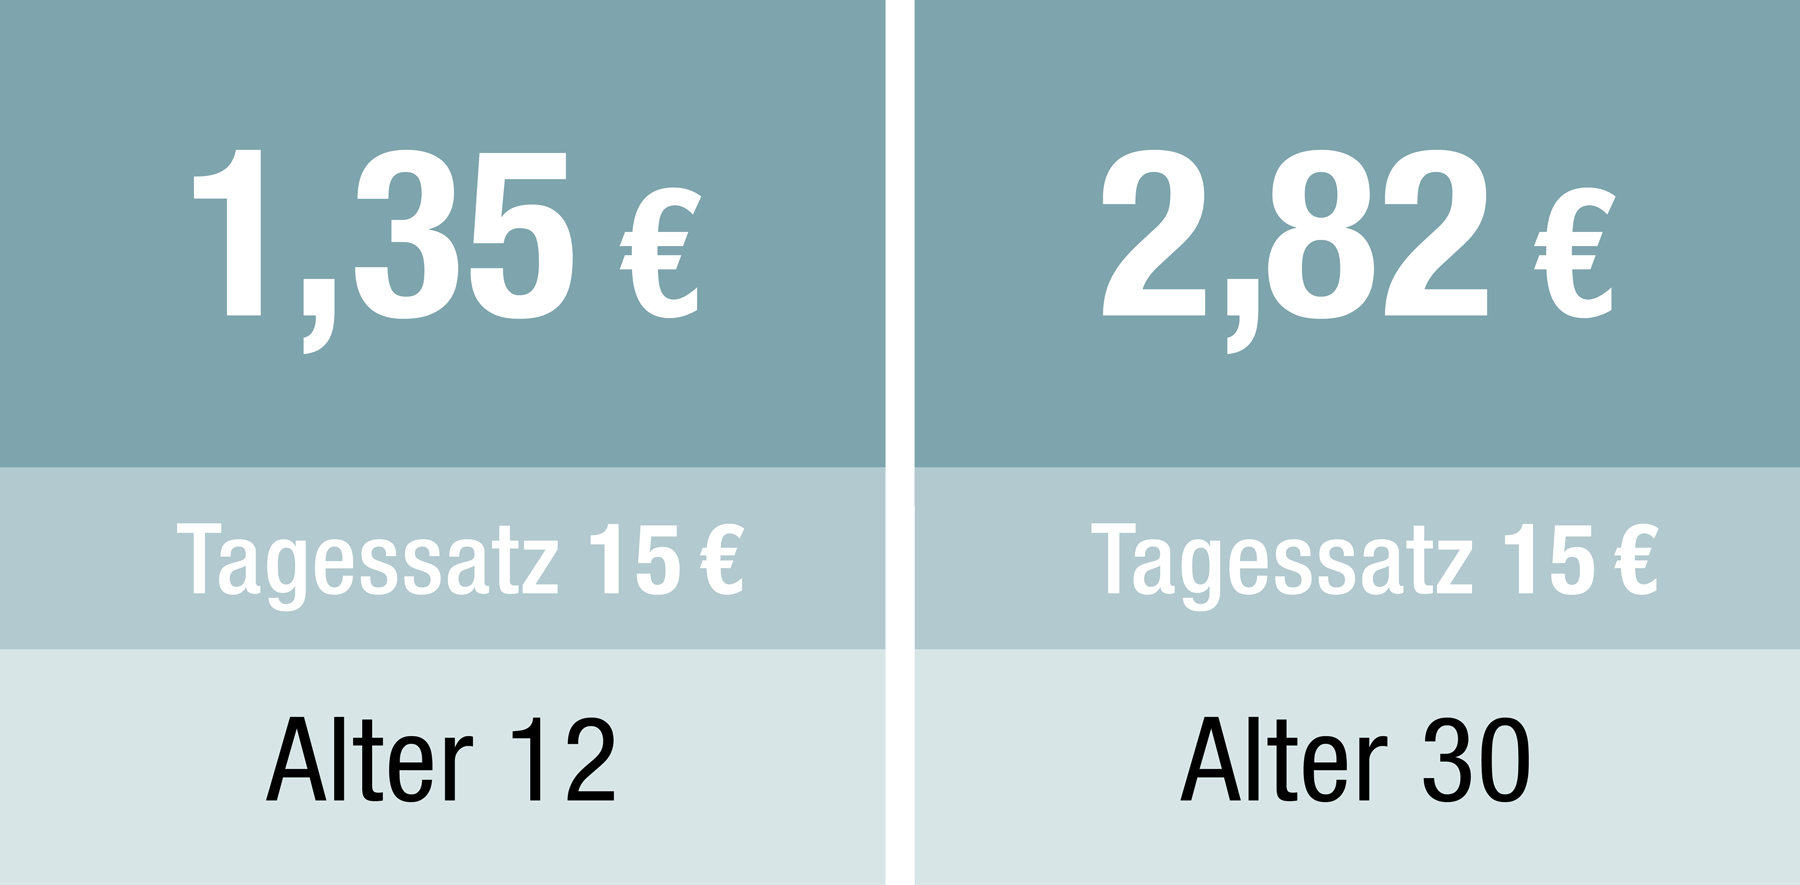 Alter 12 Jahre, Tagessatz 15 €, Beitrag 1,35 € | Alter 30 Jahre, Tagessatz 15 €, Beitrag 2,82 €